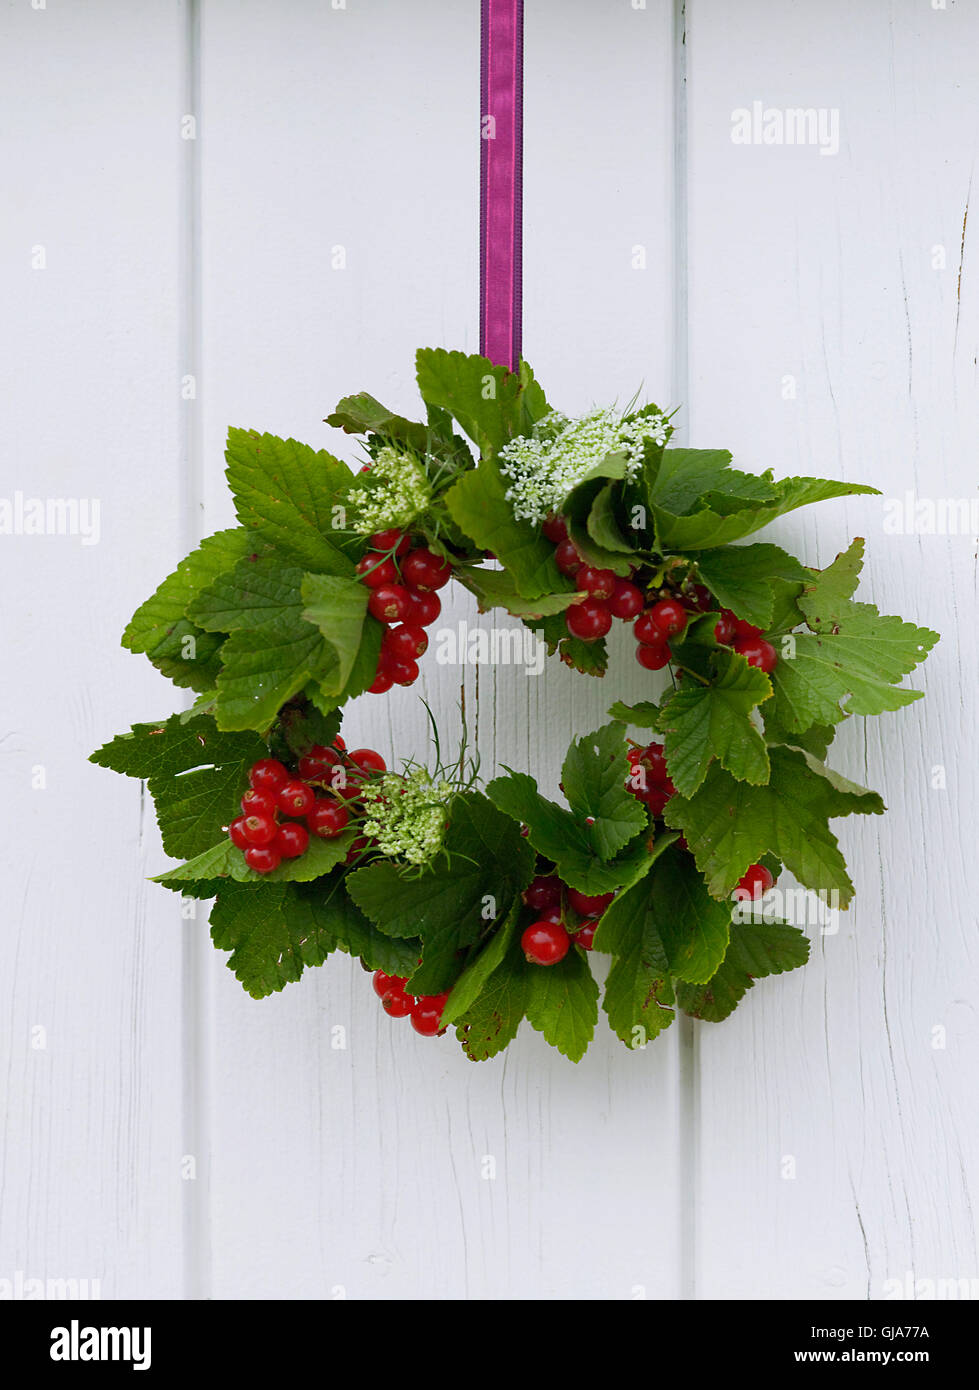 Berry wreath Stock Photo